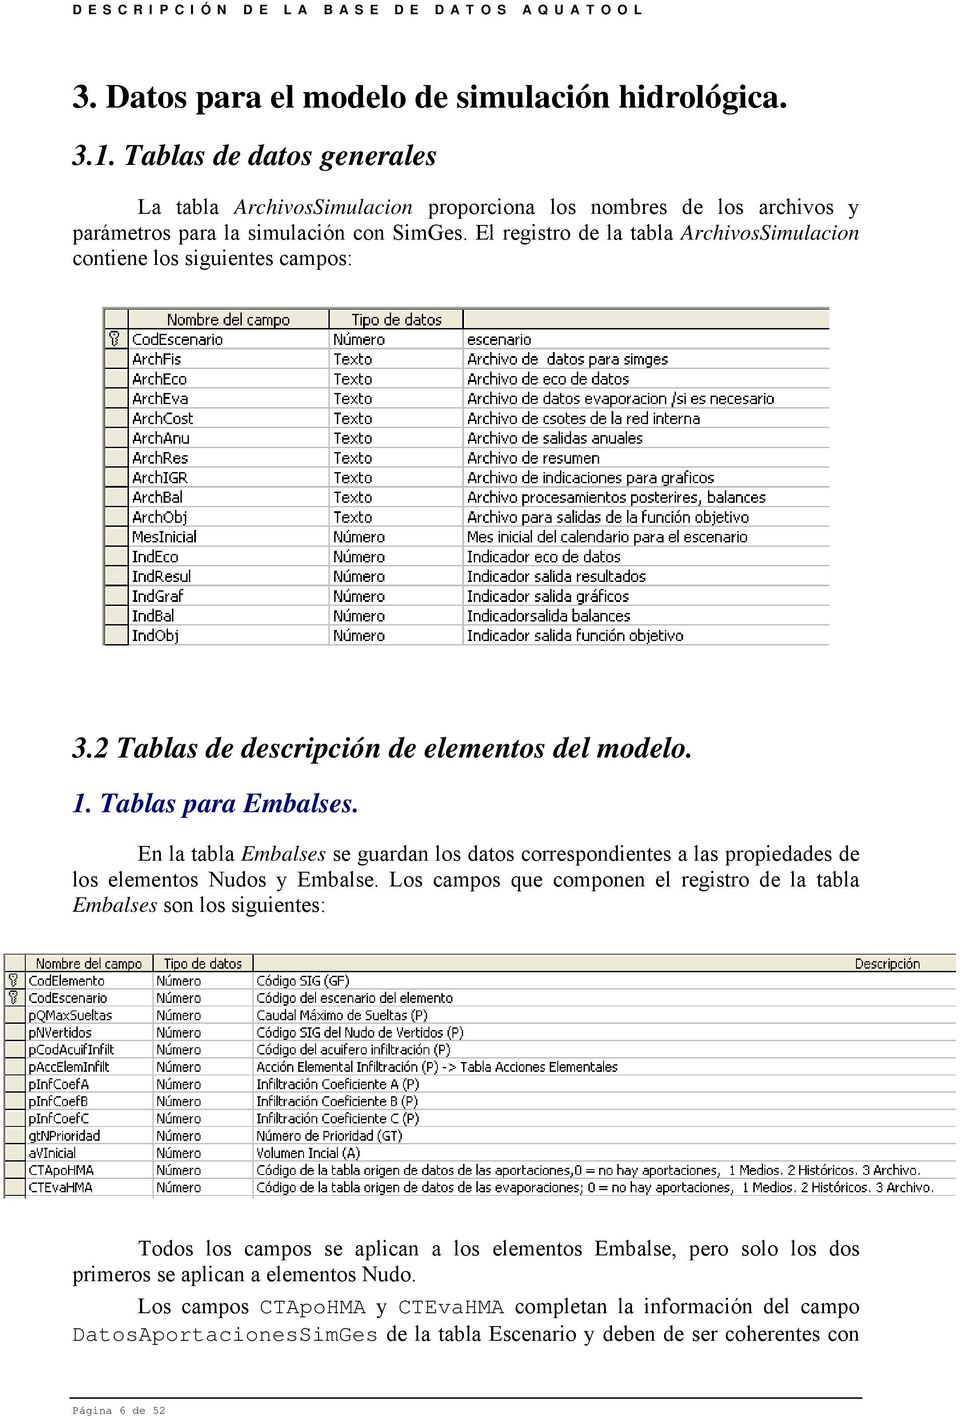 En la tabla Embalses se guardan los datos correspondientes a las propiedades de los elementos Nudos y Embalse.